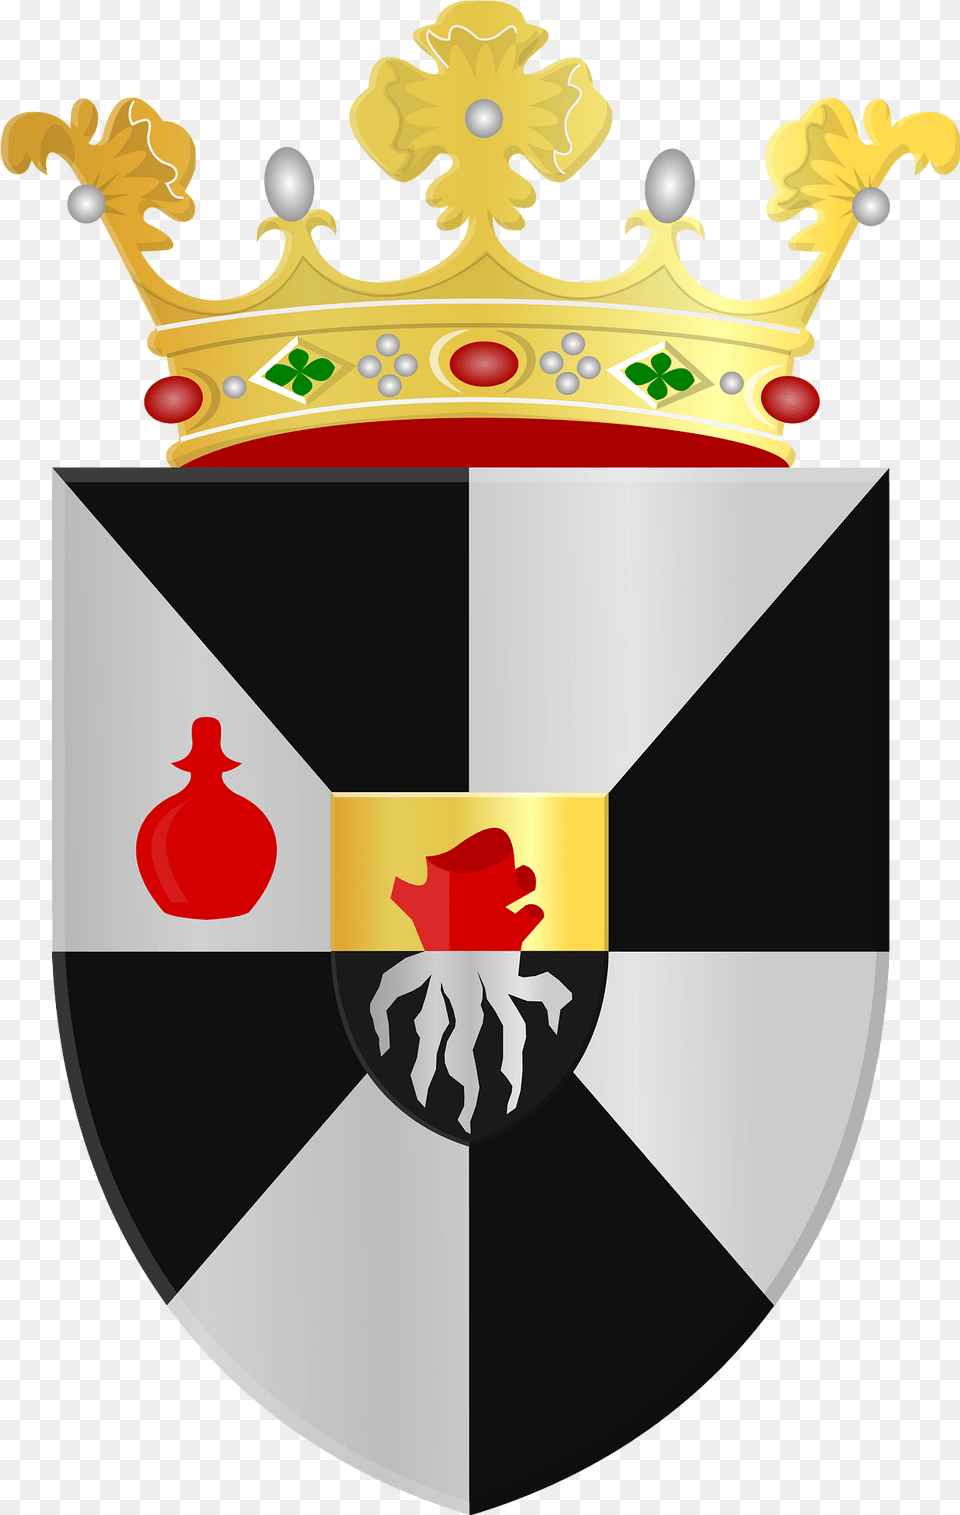 Borger Wapen Clipart, Armor, Emblem, Symbol Free Transparent Png